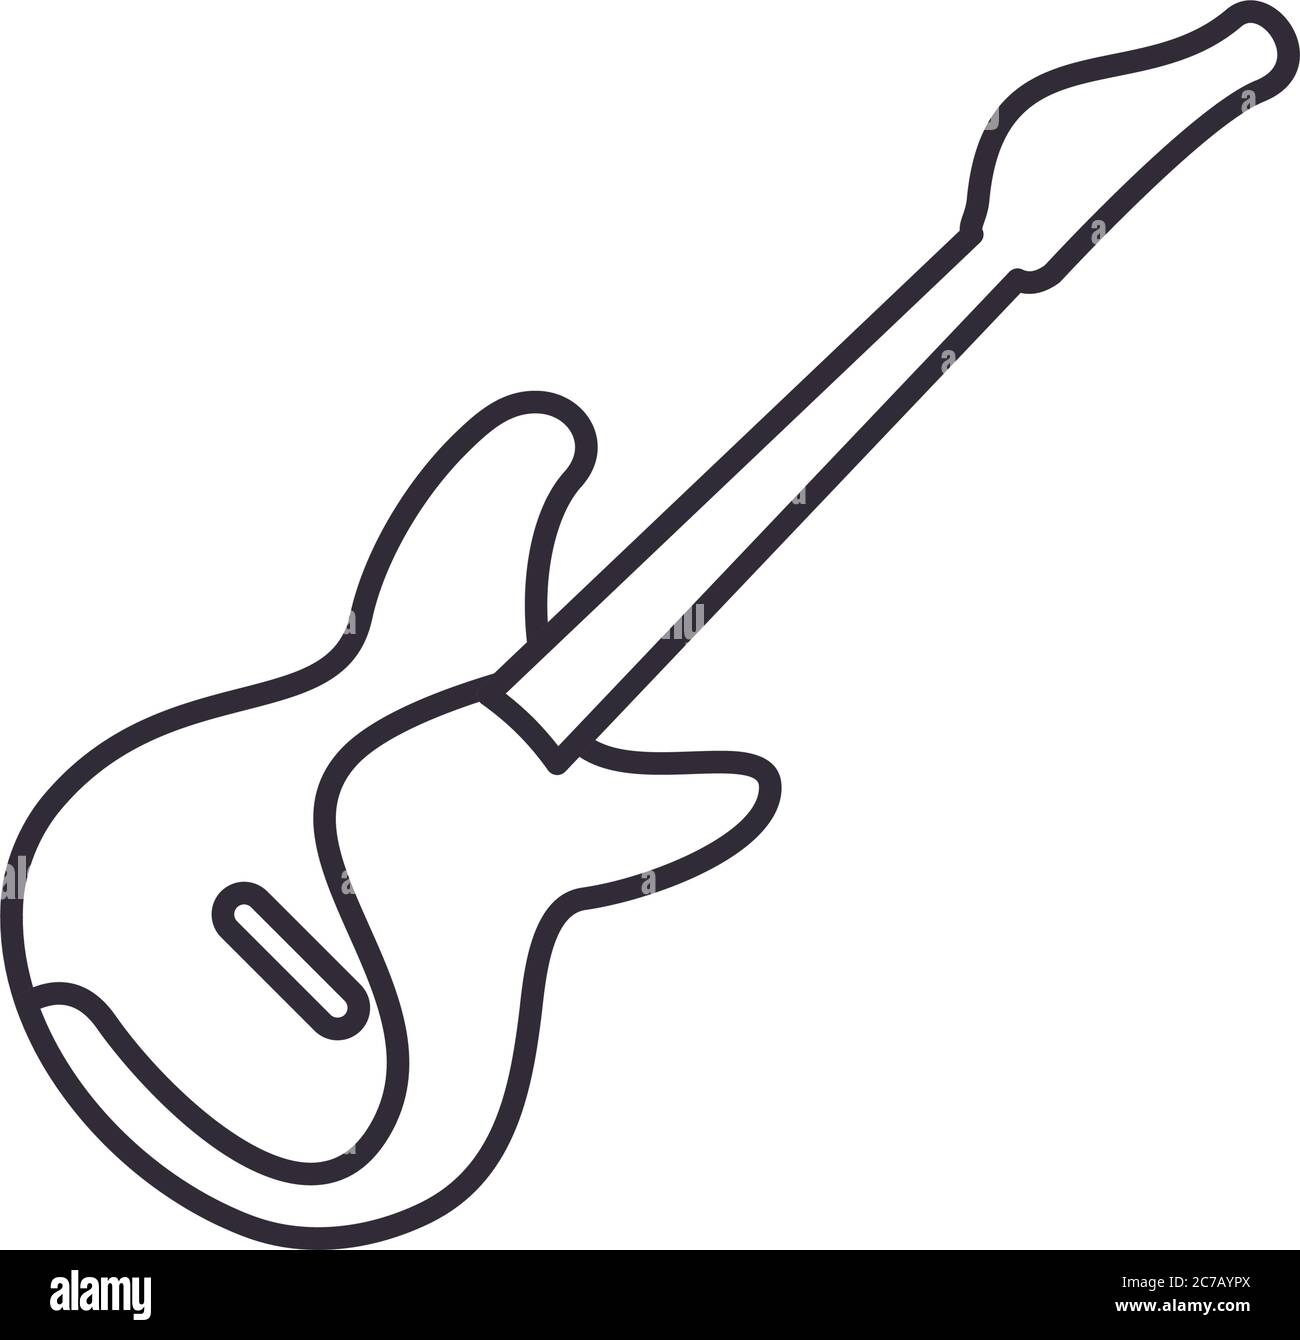 Guitare basse style ligne style icône design, musique son mélodie chanson  art musical et thème de composition Illustration vectorielle Image  Vectorielle Stock - Alamy